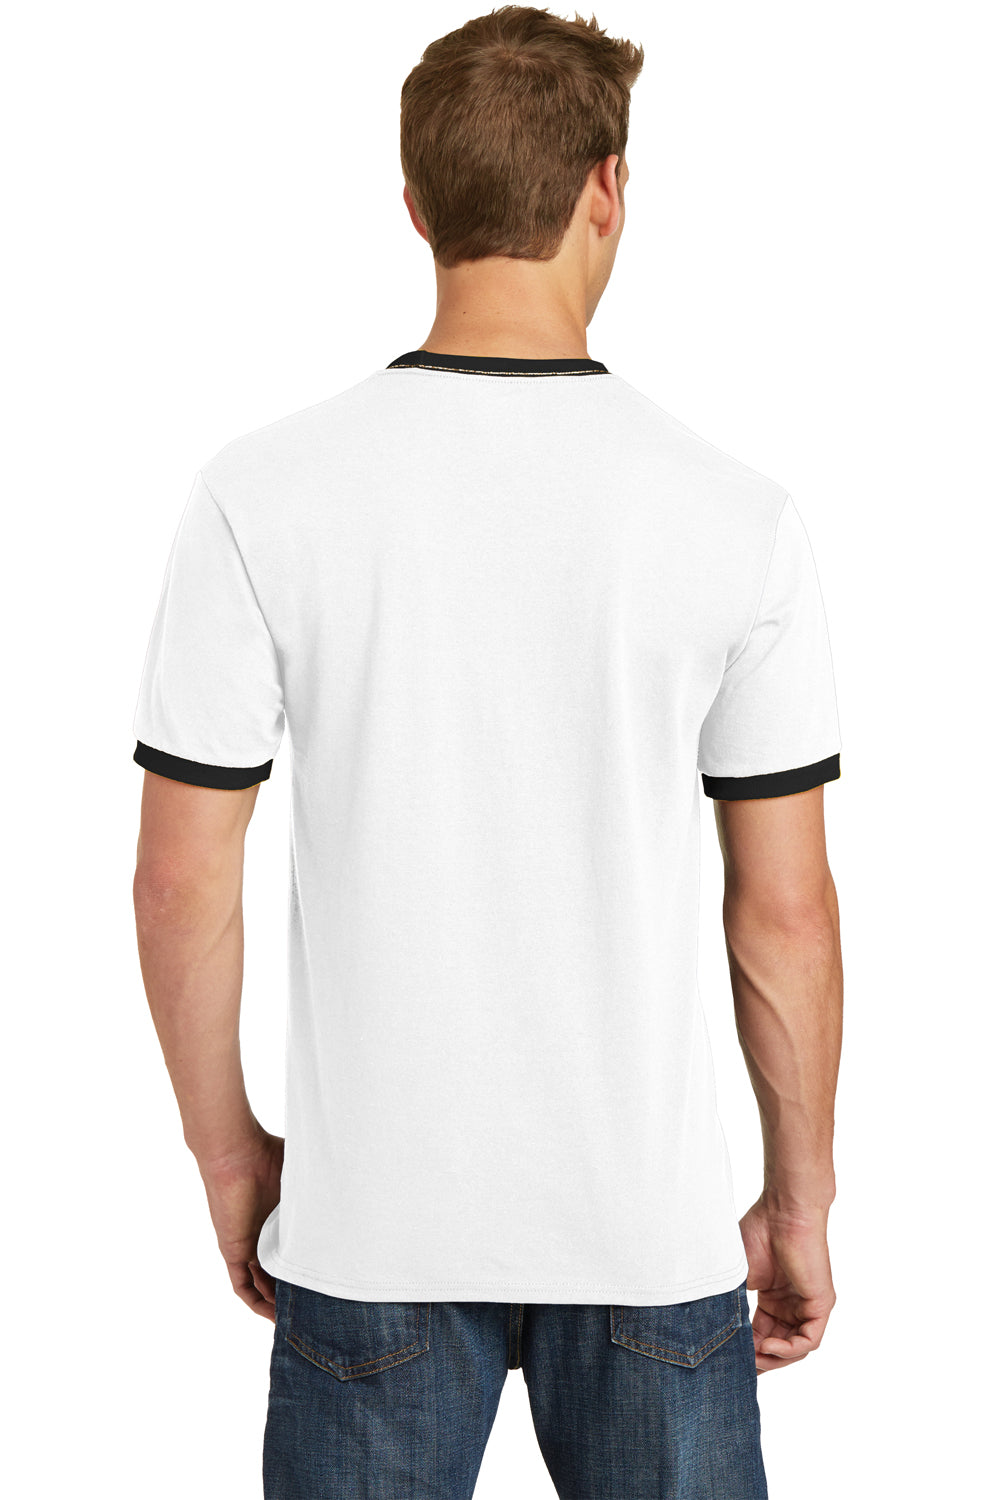 Port & Company PC54R Mens Core Ringer Short Sleeve Crewneck T-Shirt White/Black Back